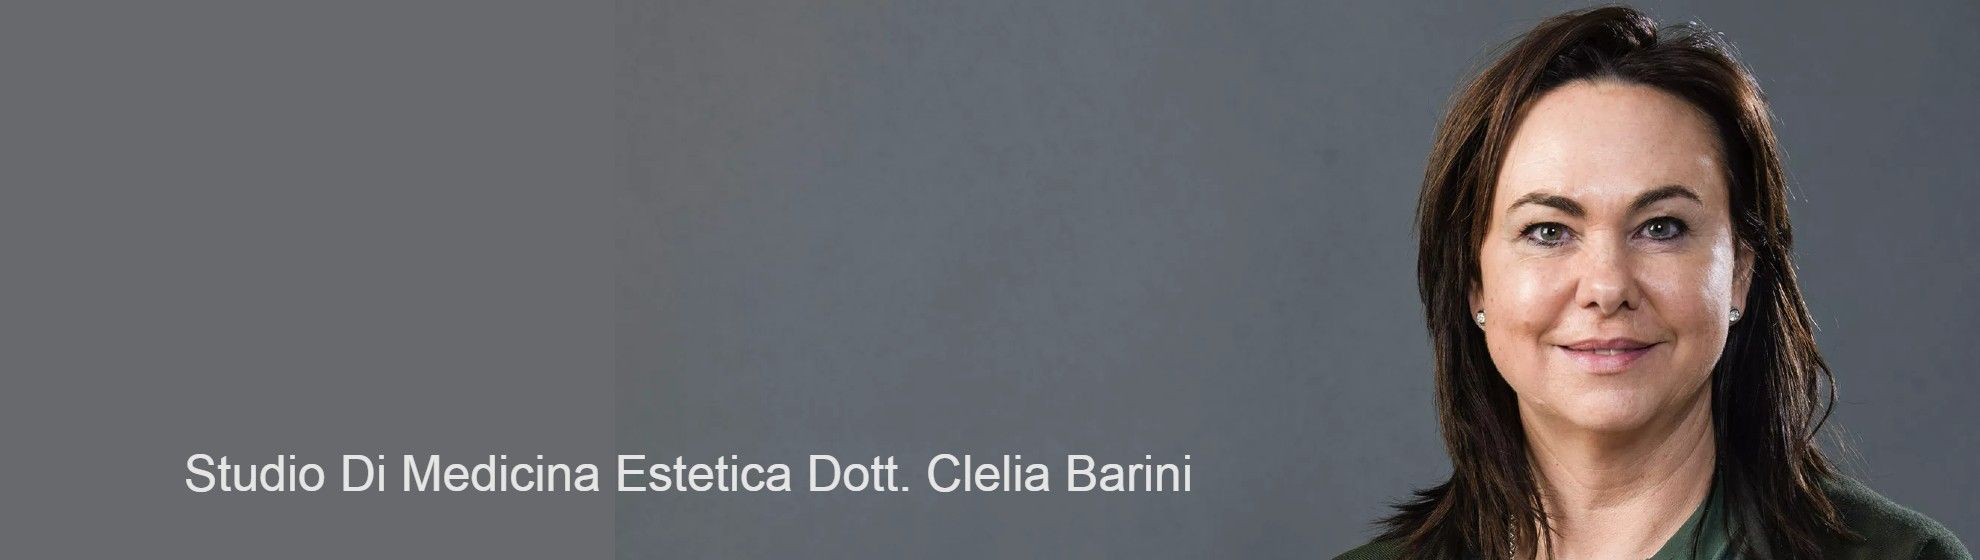 Studio Di Medicina Estetica Dott. Clelia Barini